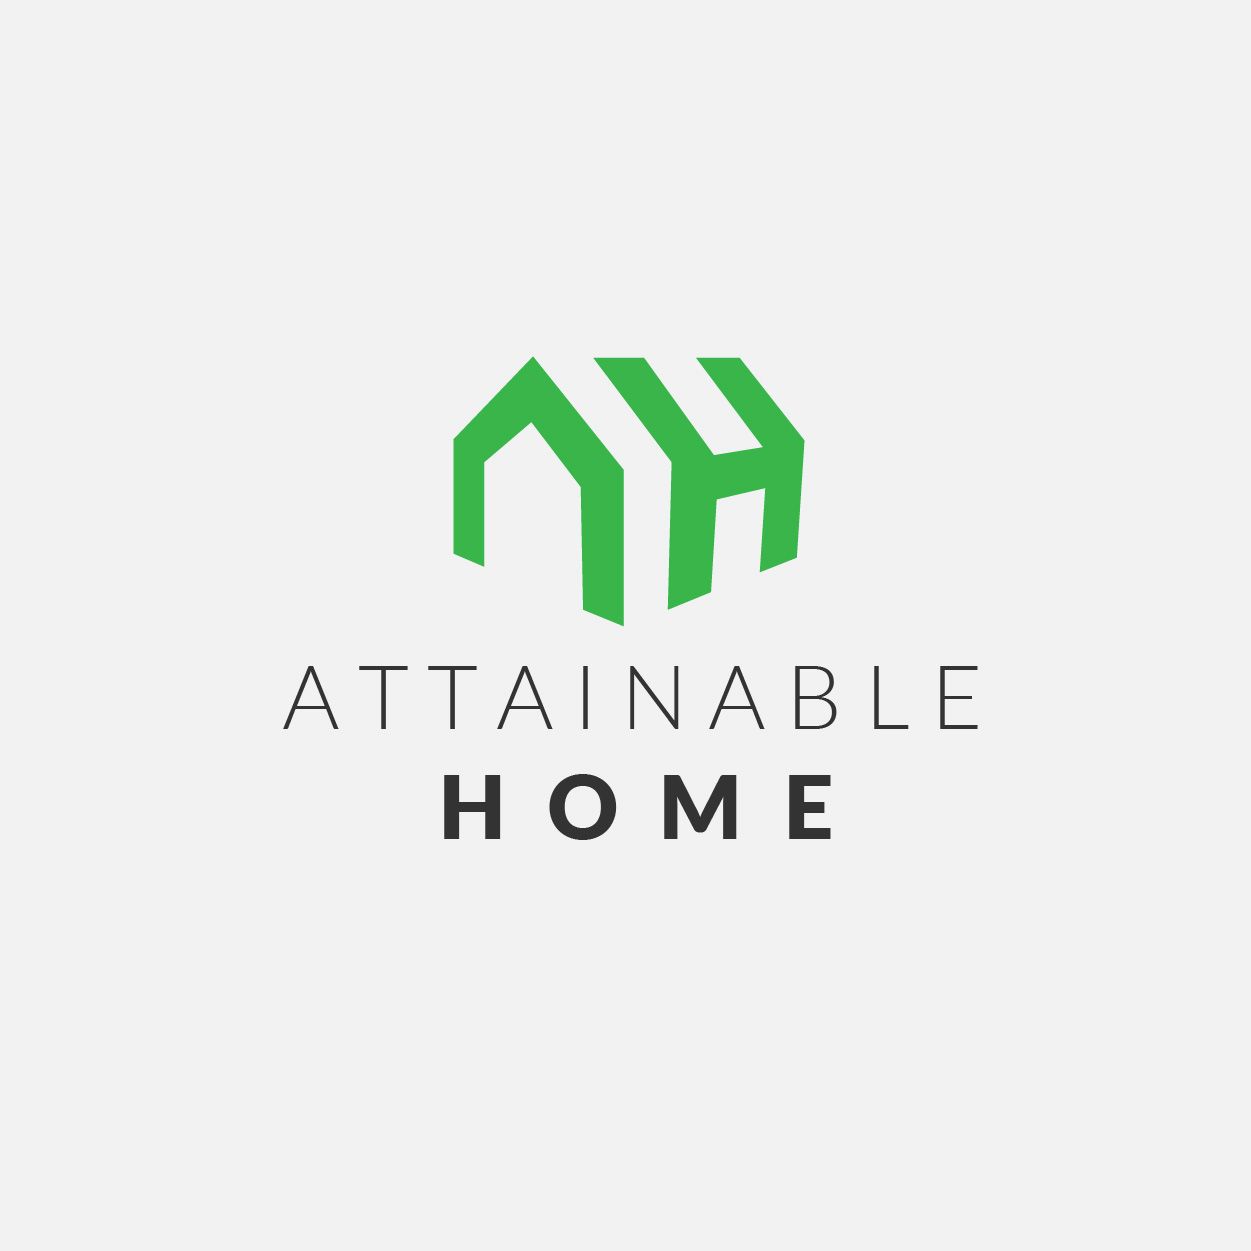 Logotyp Attainable home - projektowanie logotypów portfolio